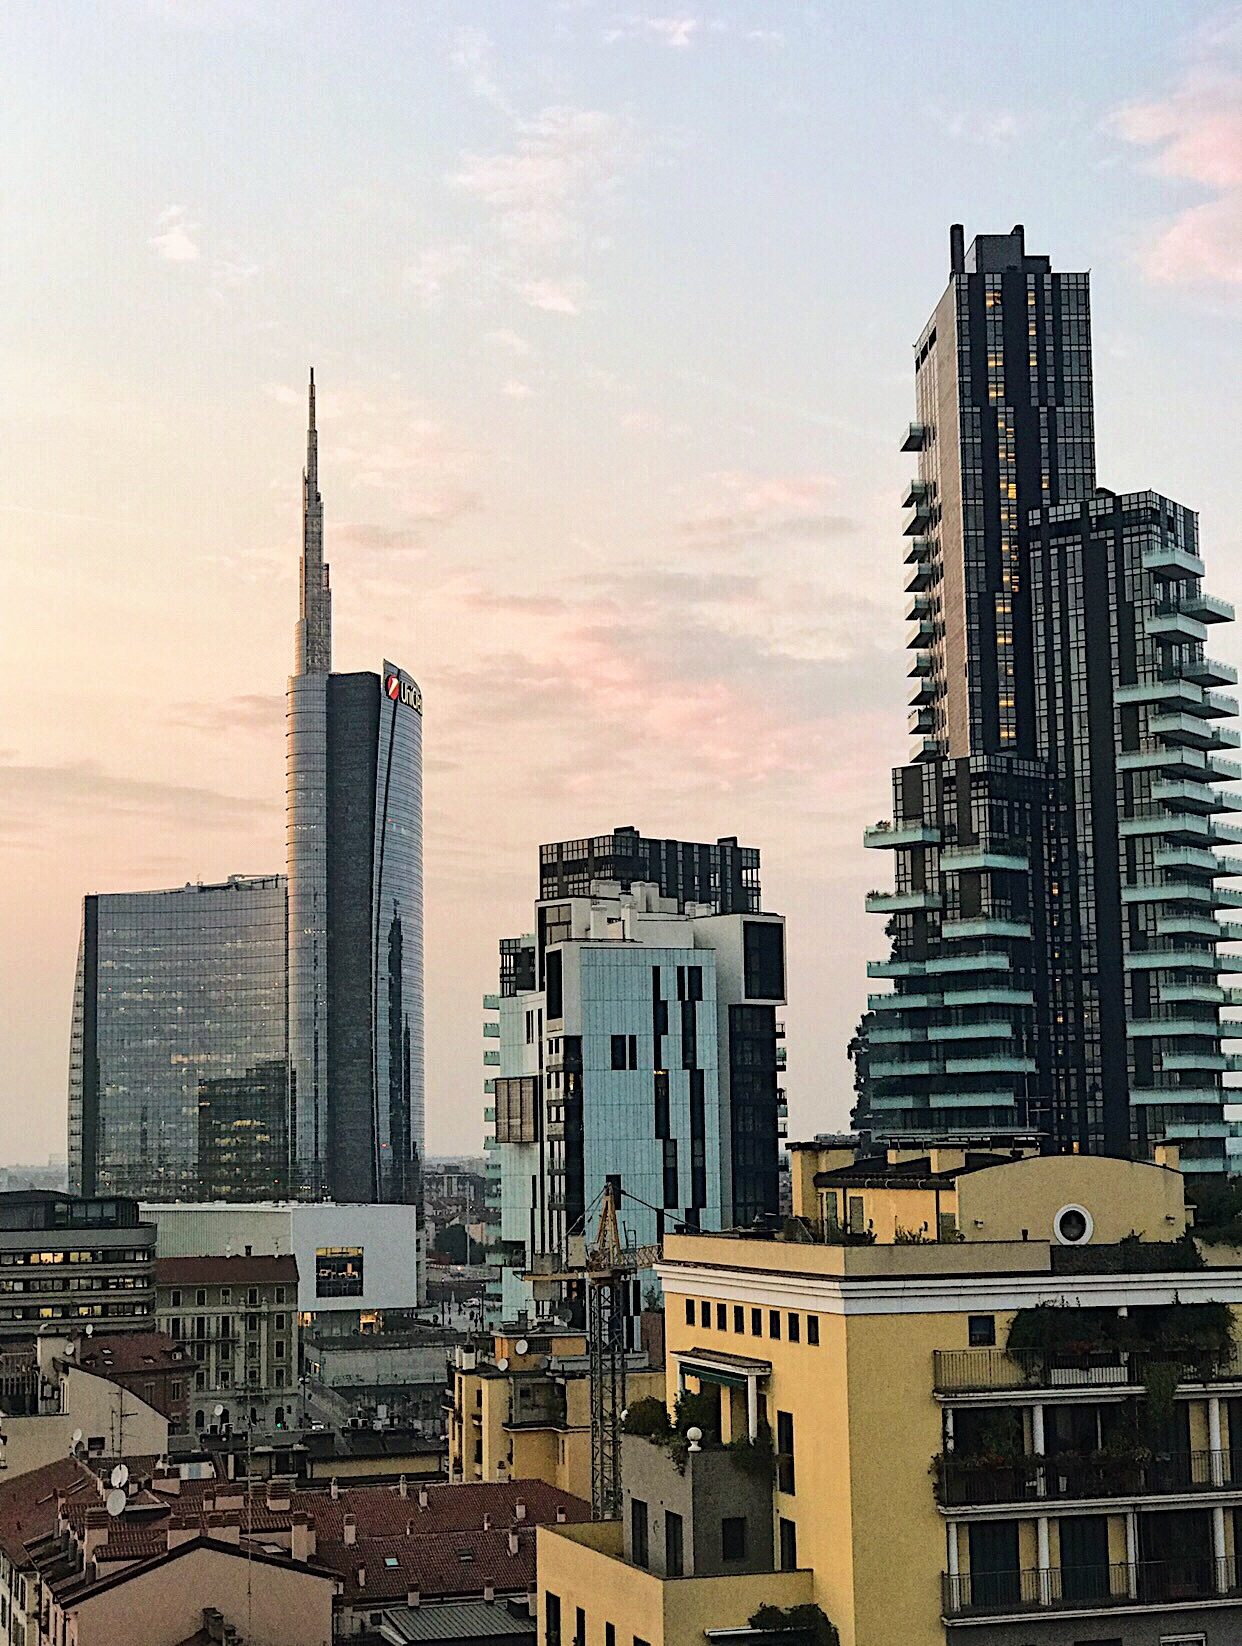 Milano deve diventare una città lenta, come auspica il sindaco Sala?